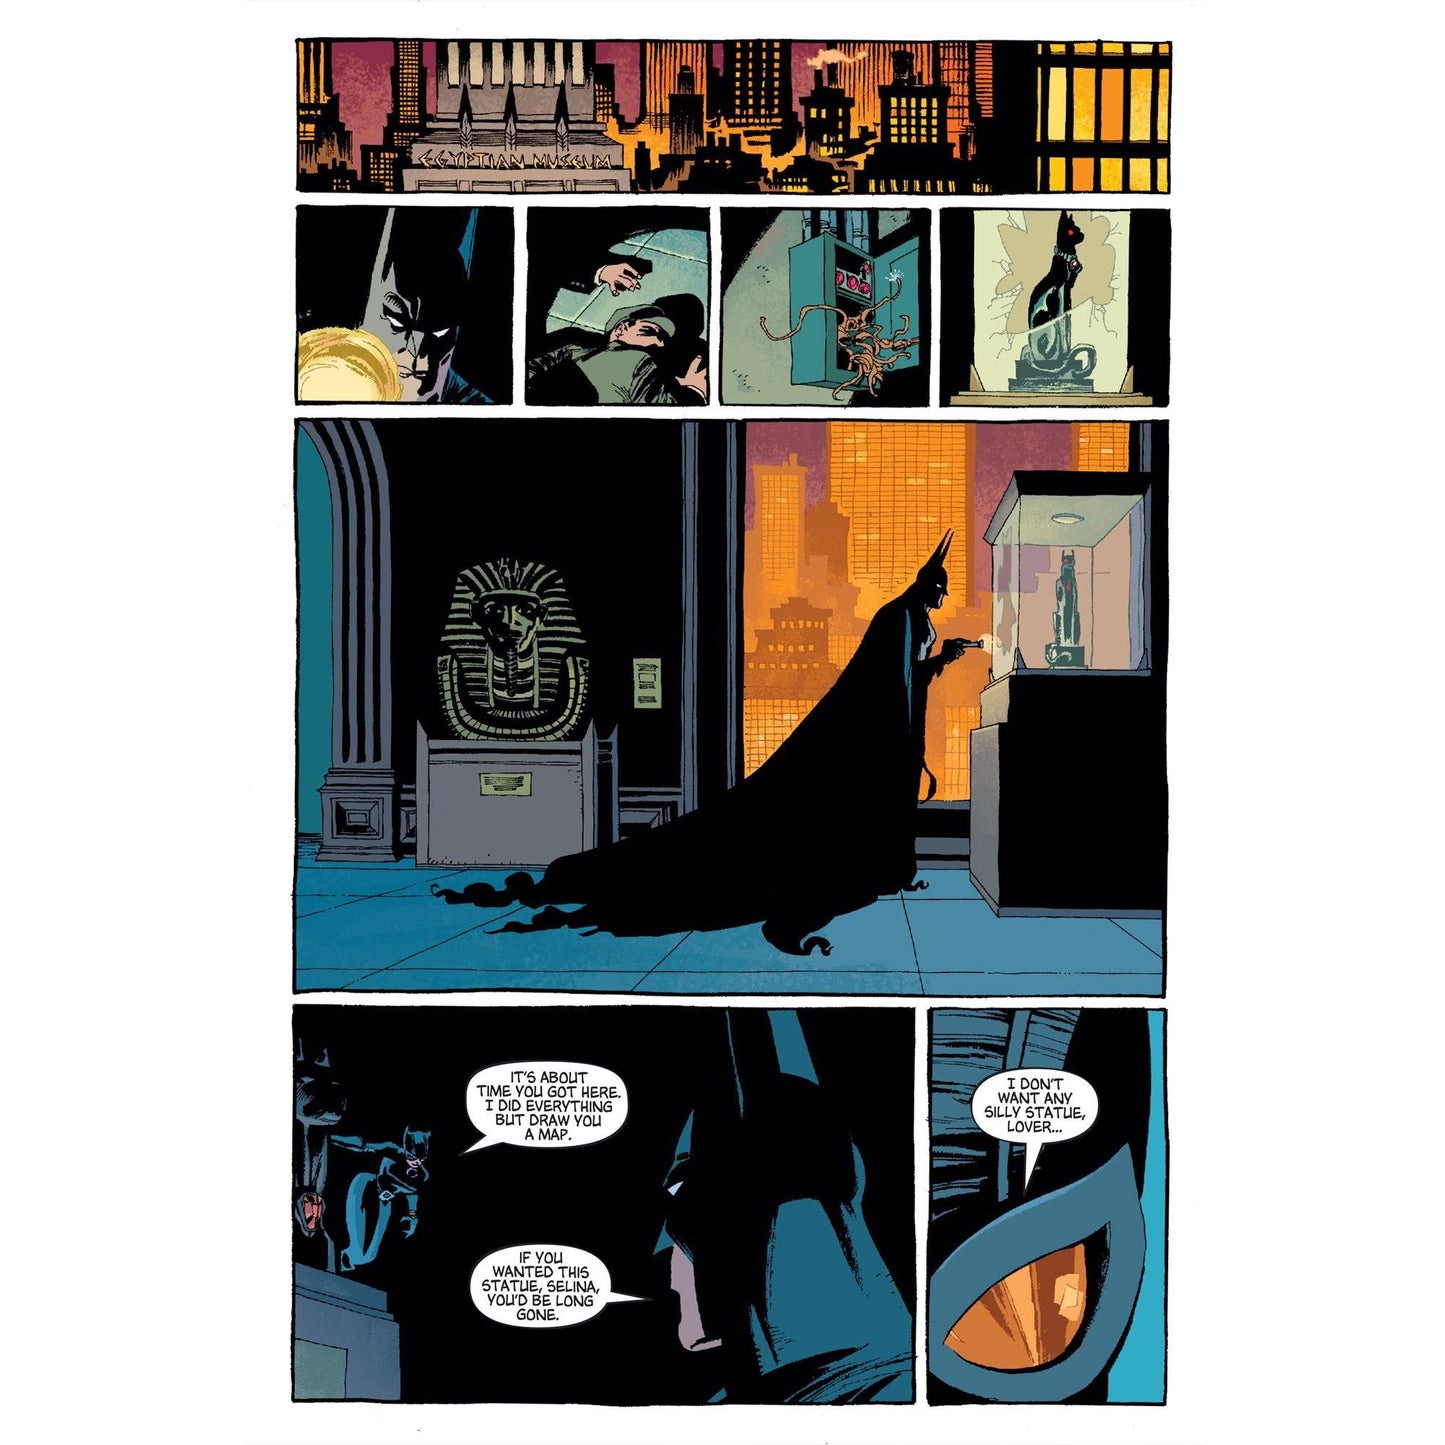 DC Comics Graphic Novel Collection SP14 Solo: Part 1